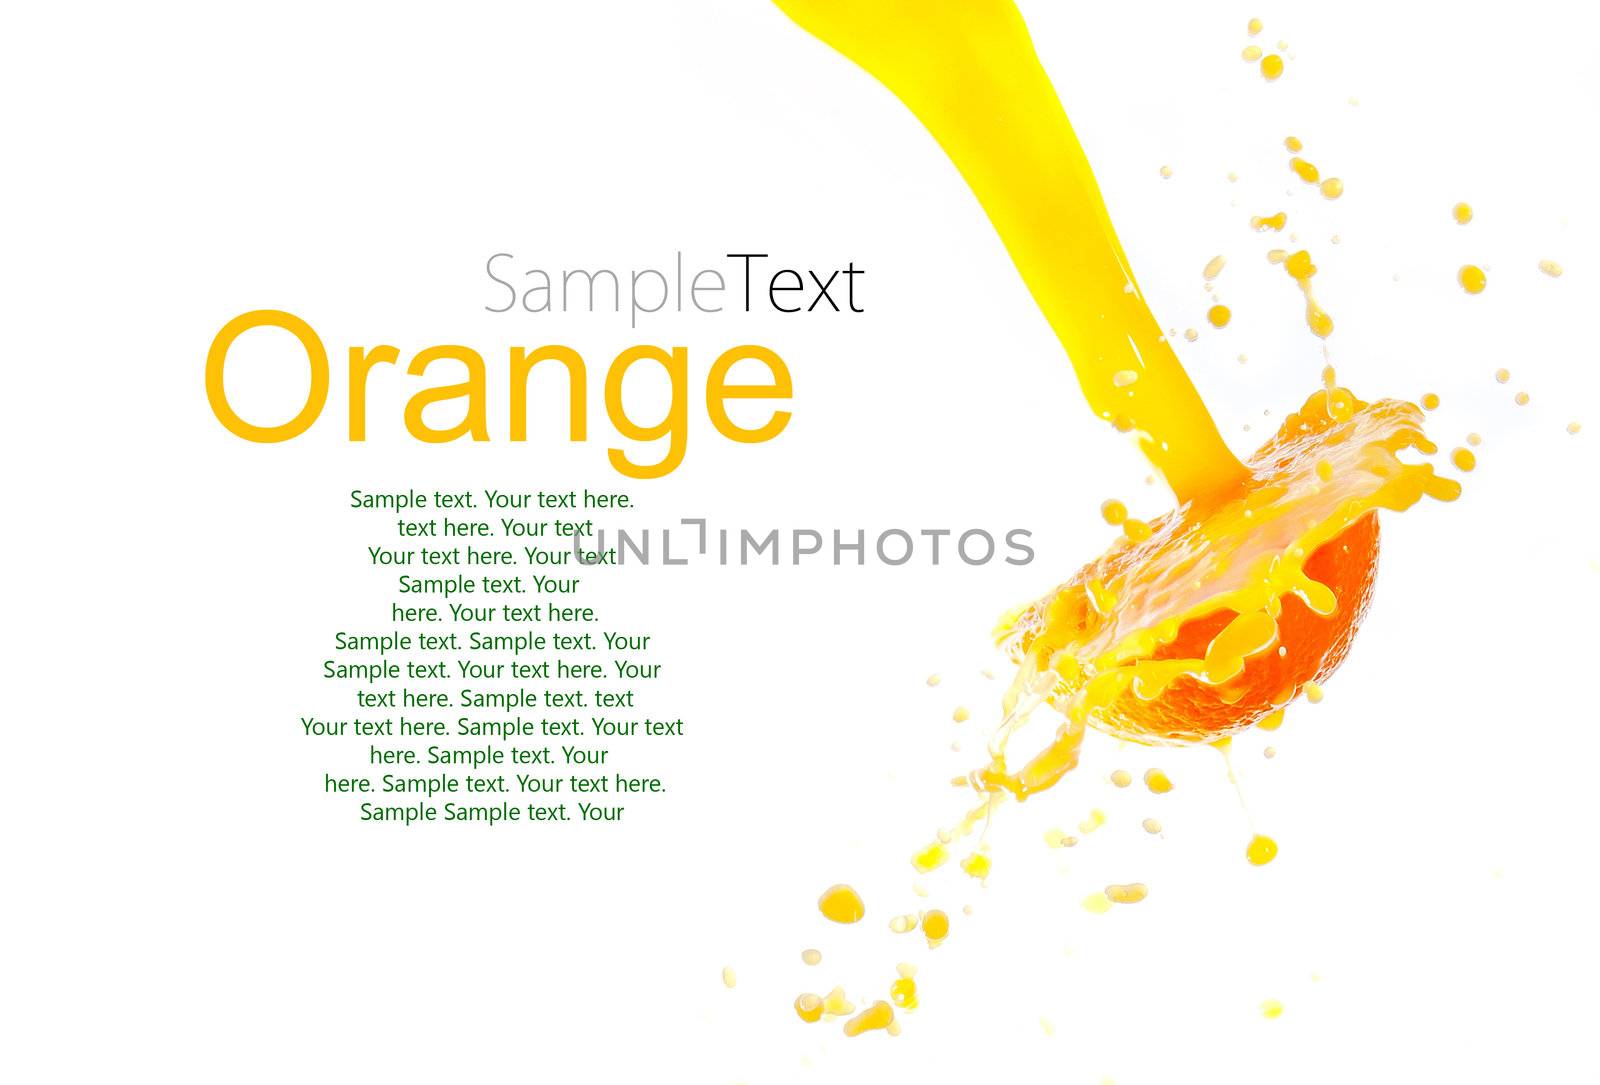 orange juice splash isolated on white background with sample text